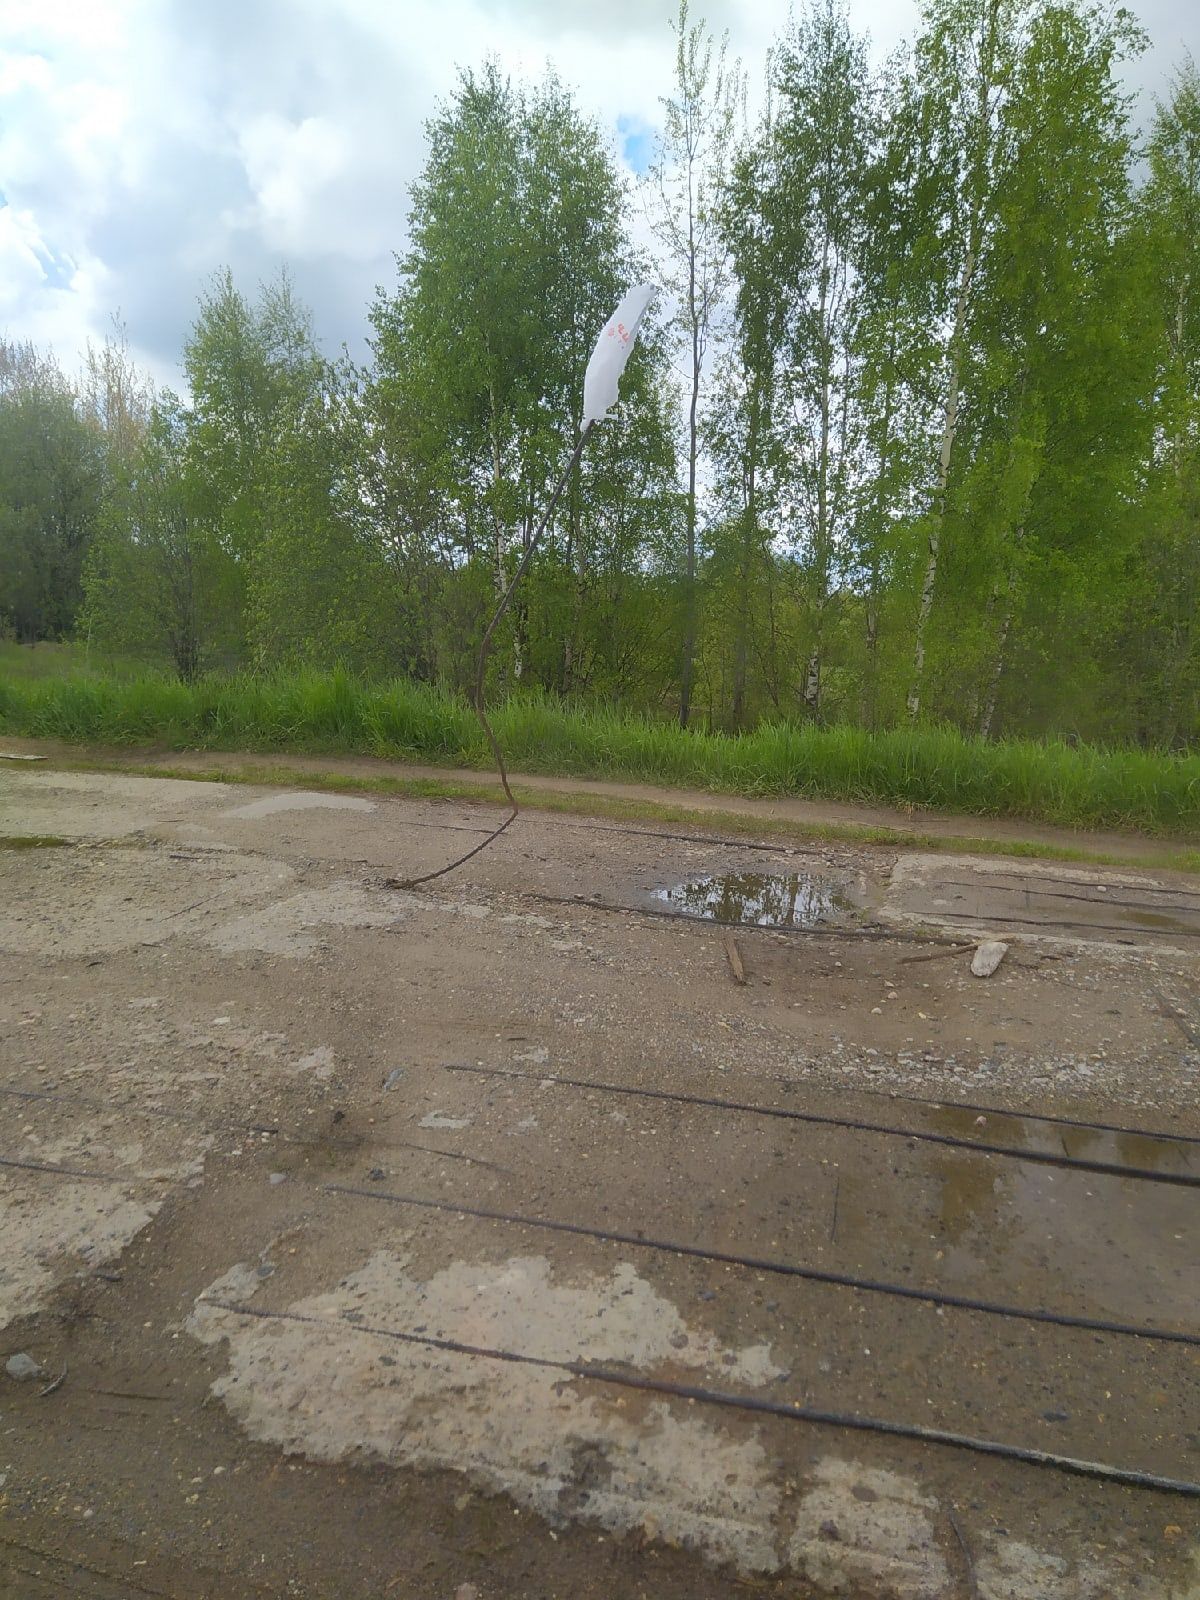 «Везде бетонные плиты с торчащей арматурой»: по дорогам Костромской области опасно ездить